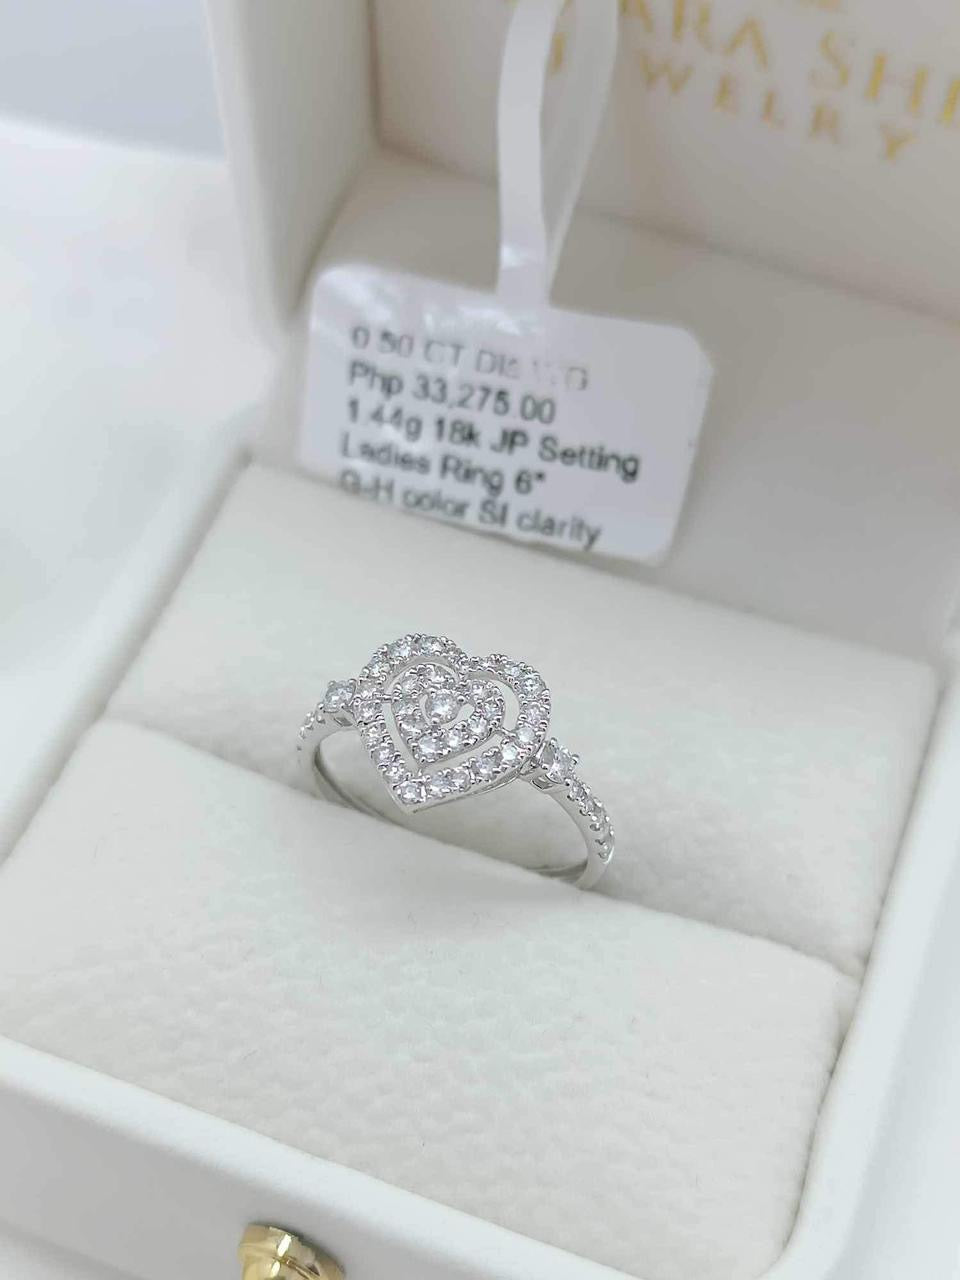 Freya Diamond Ring